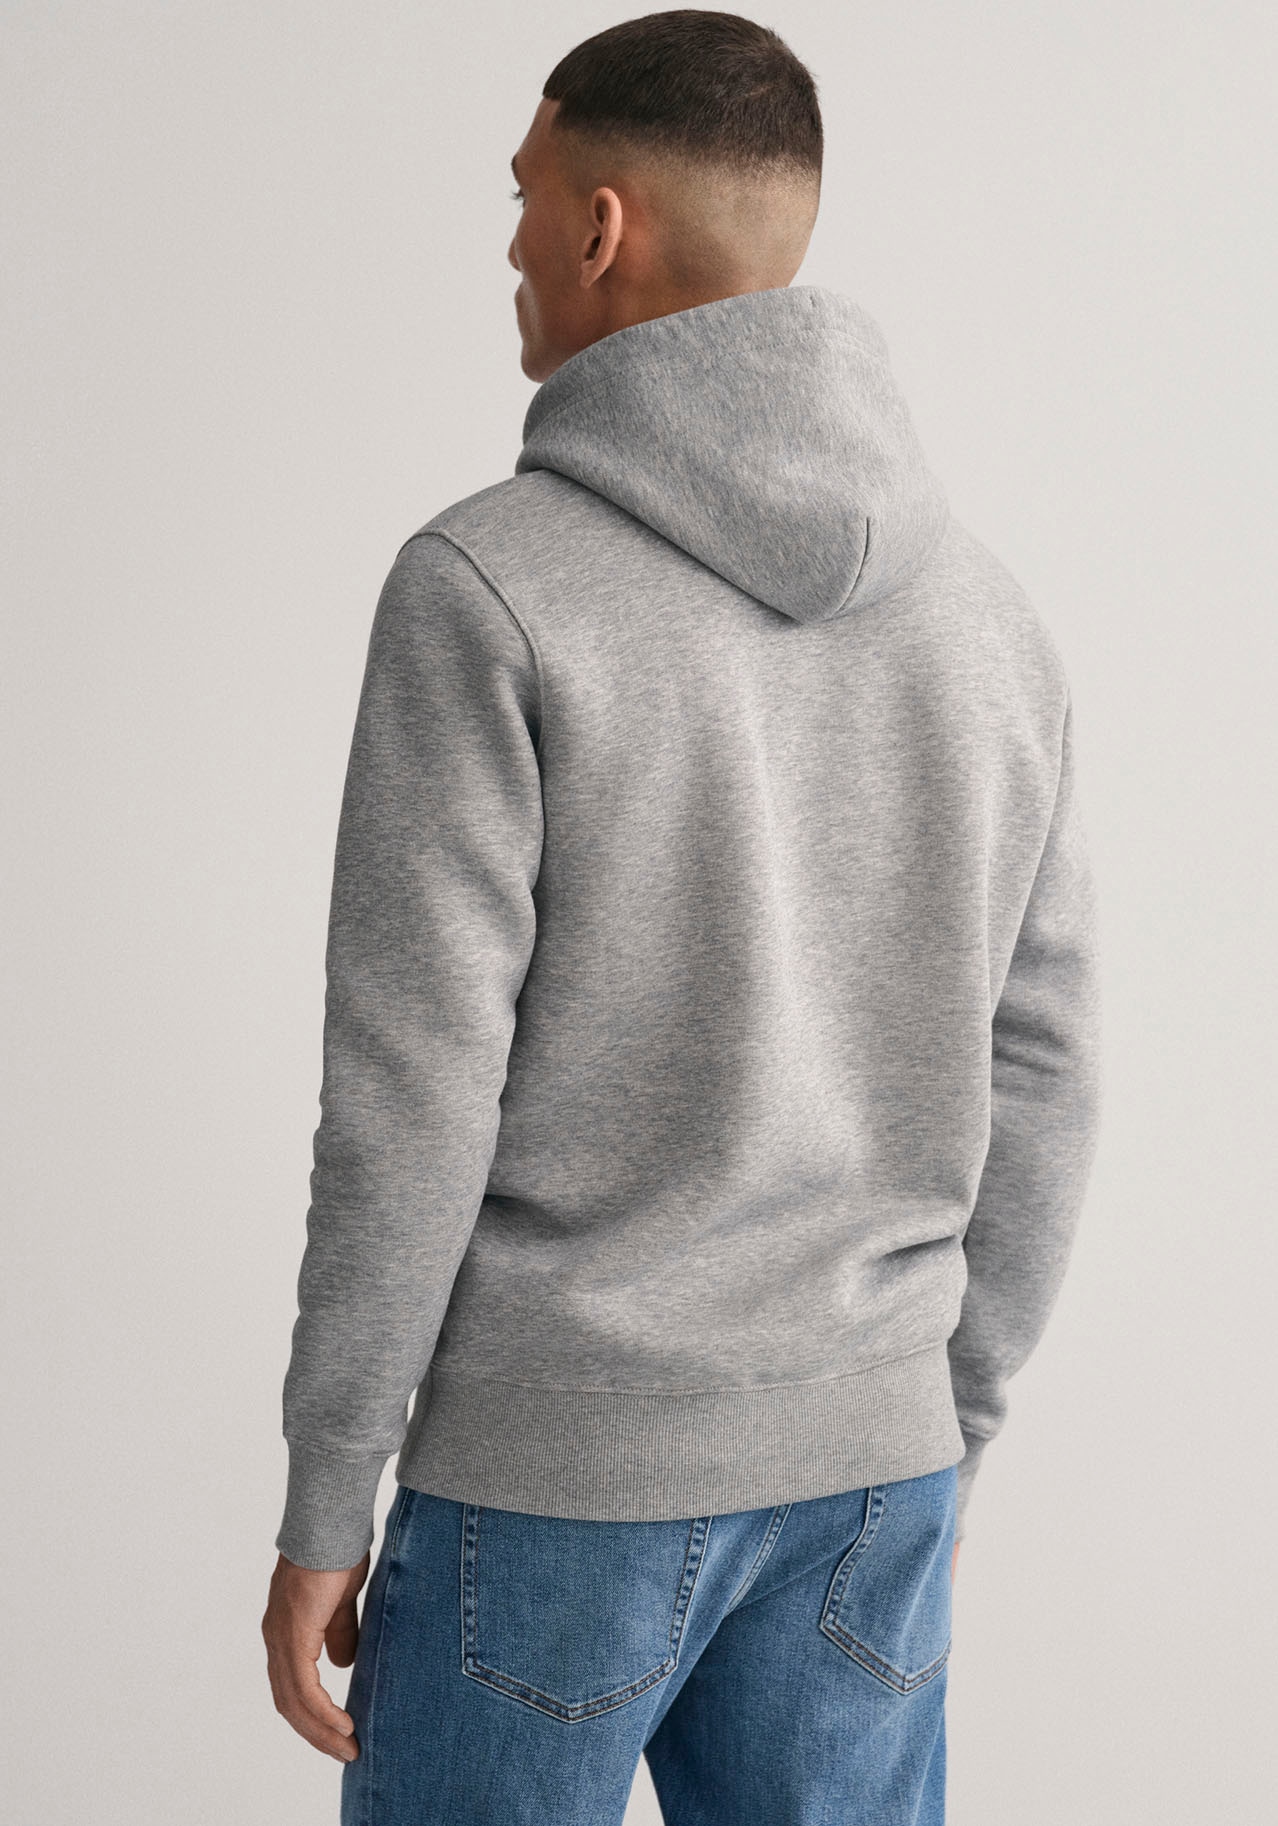 ➤ Sweatshirts versandkostenfrei kaufen Mindestbestellwert - ohne